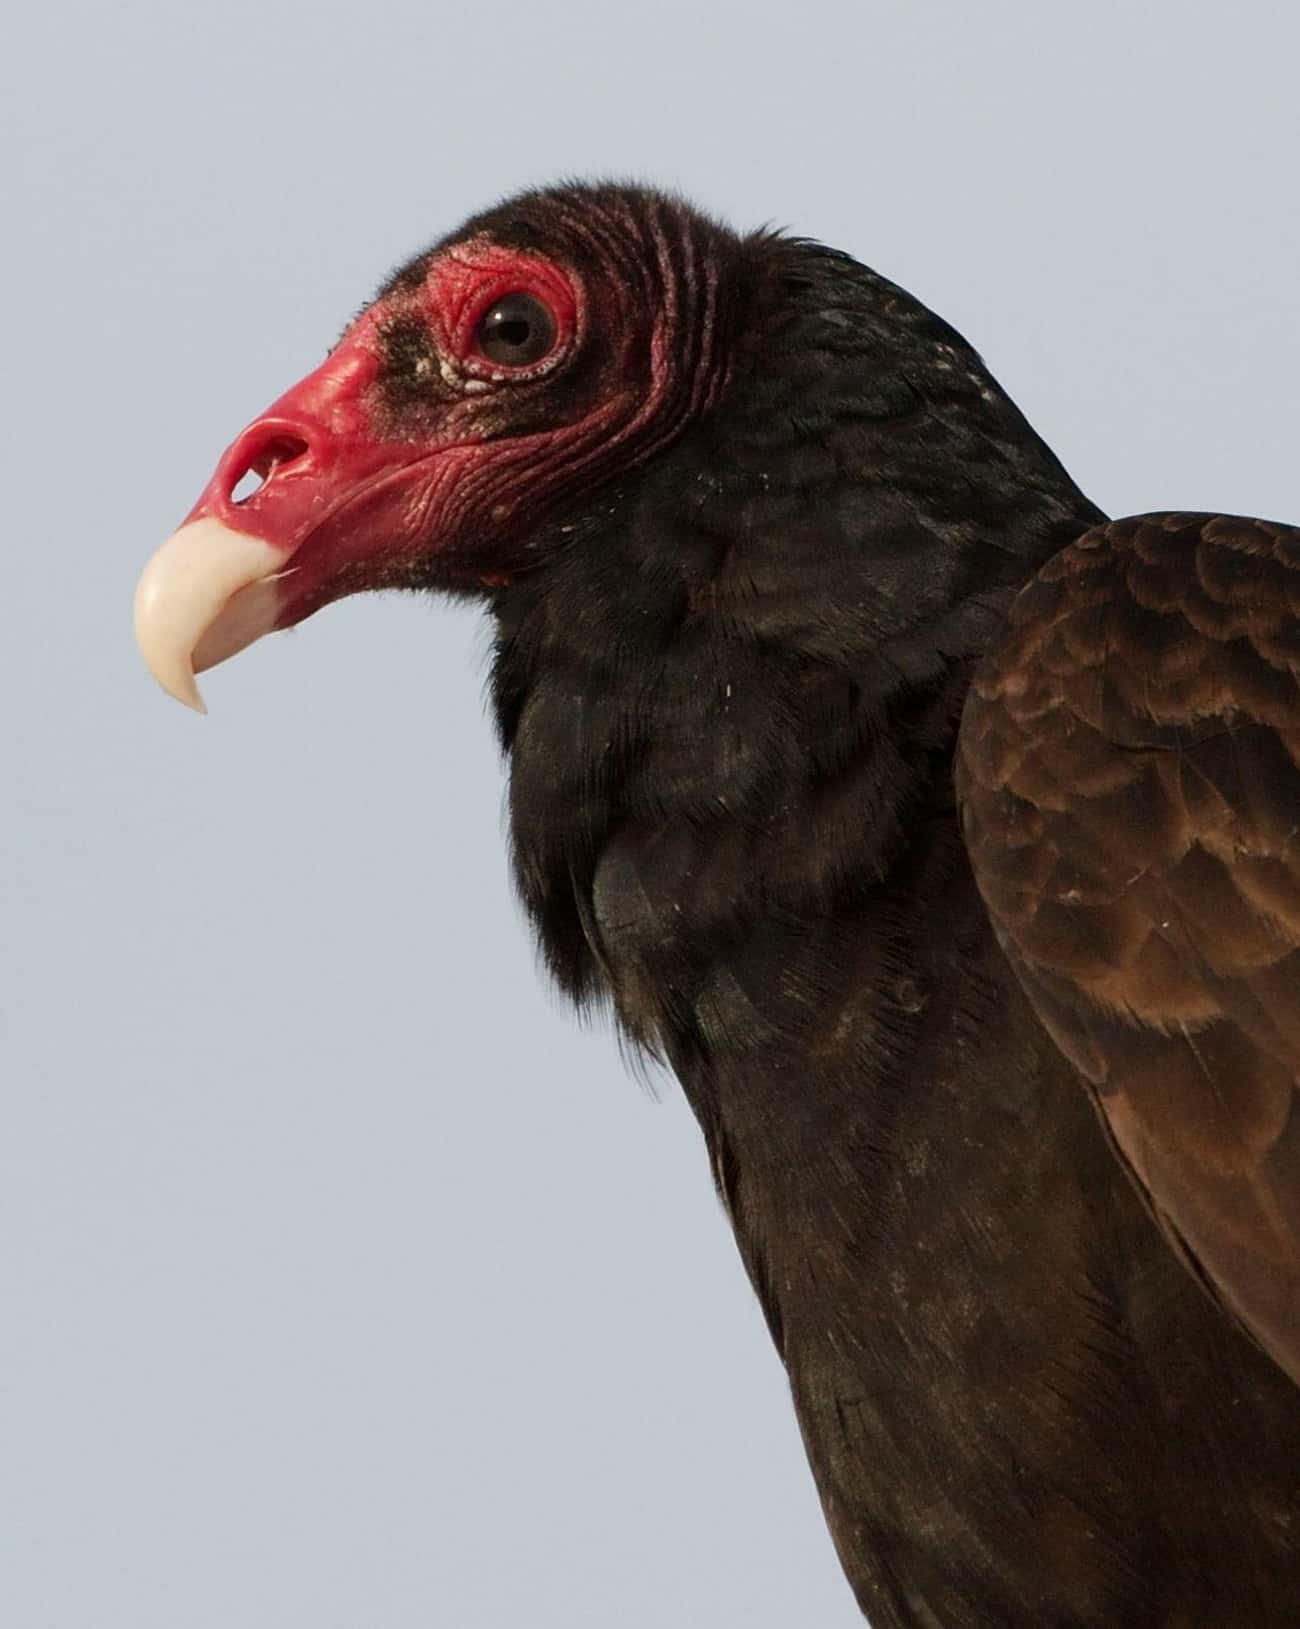 Turkey Vultures Vomit On Enemies To Escape